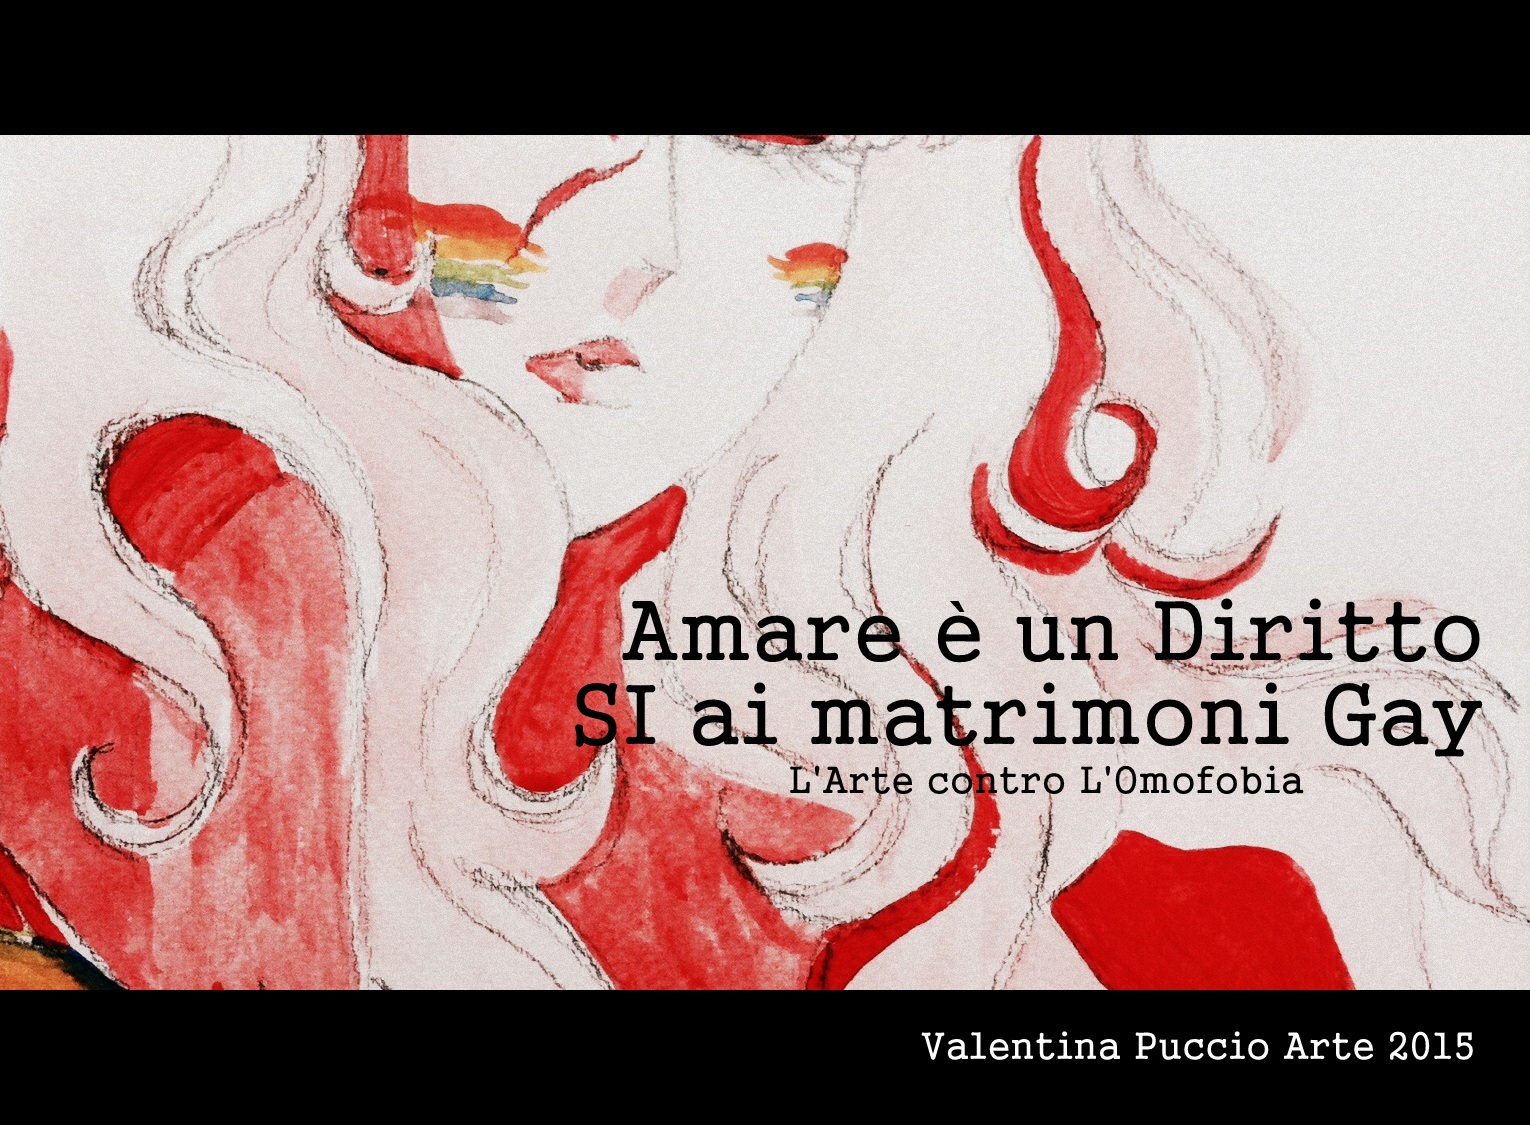 Foto 1 - La pittura di Valentina Puccio diventa una locandina contro l'Omofobia